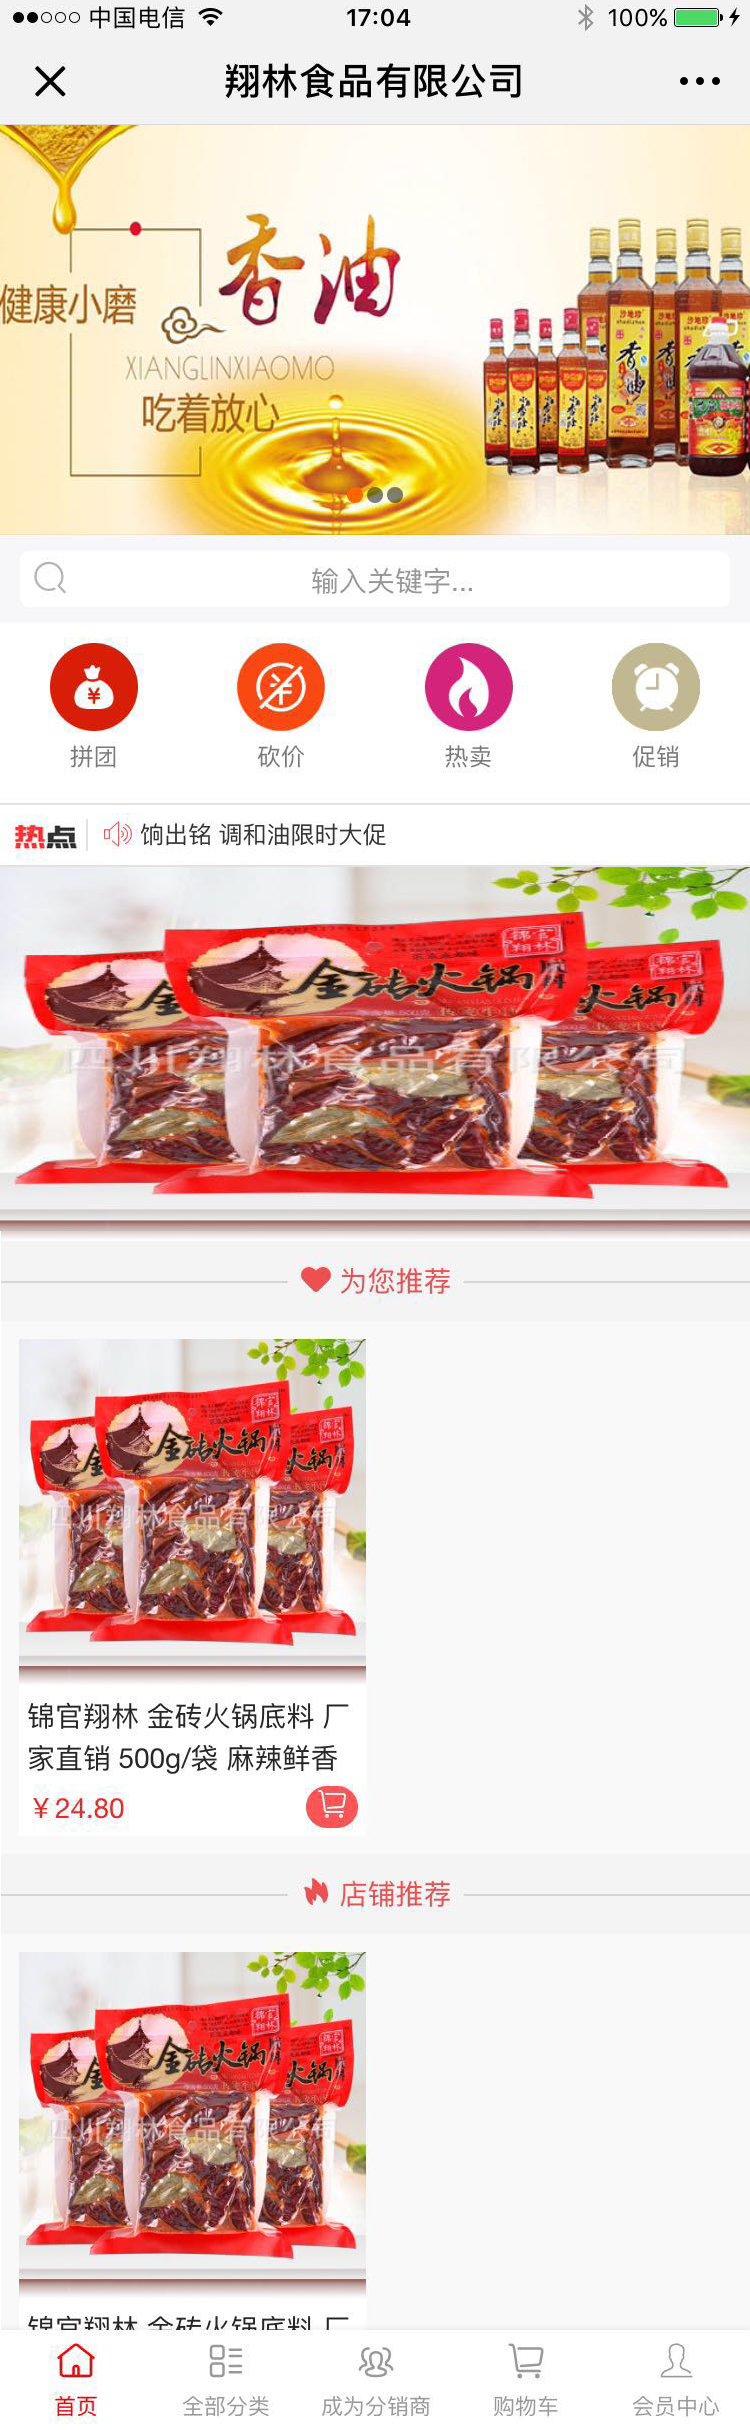 餐饮红色成都-四川翔林食品有限公司微分销高级版.jpg